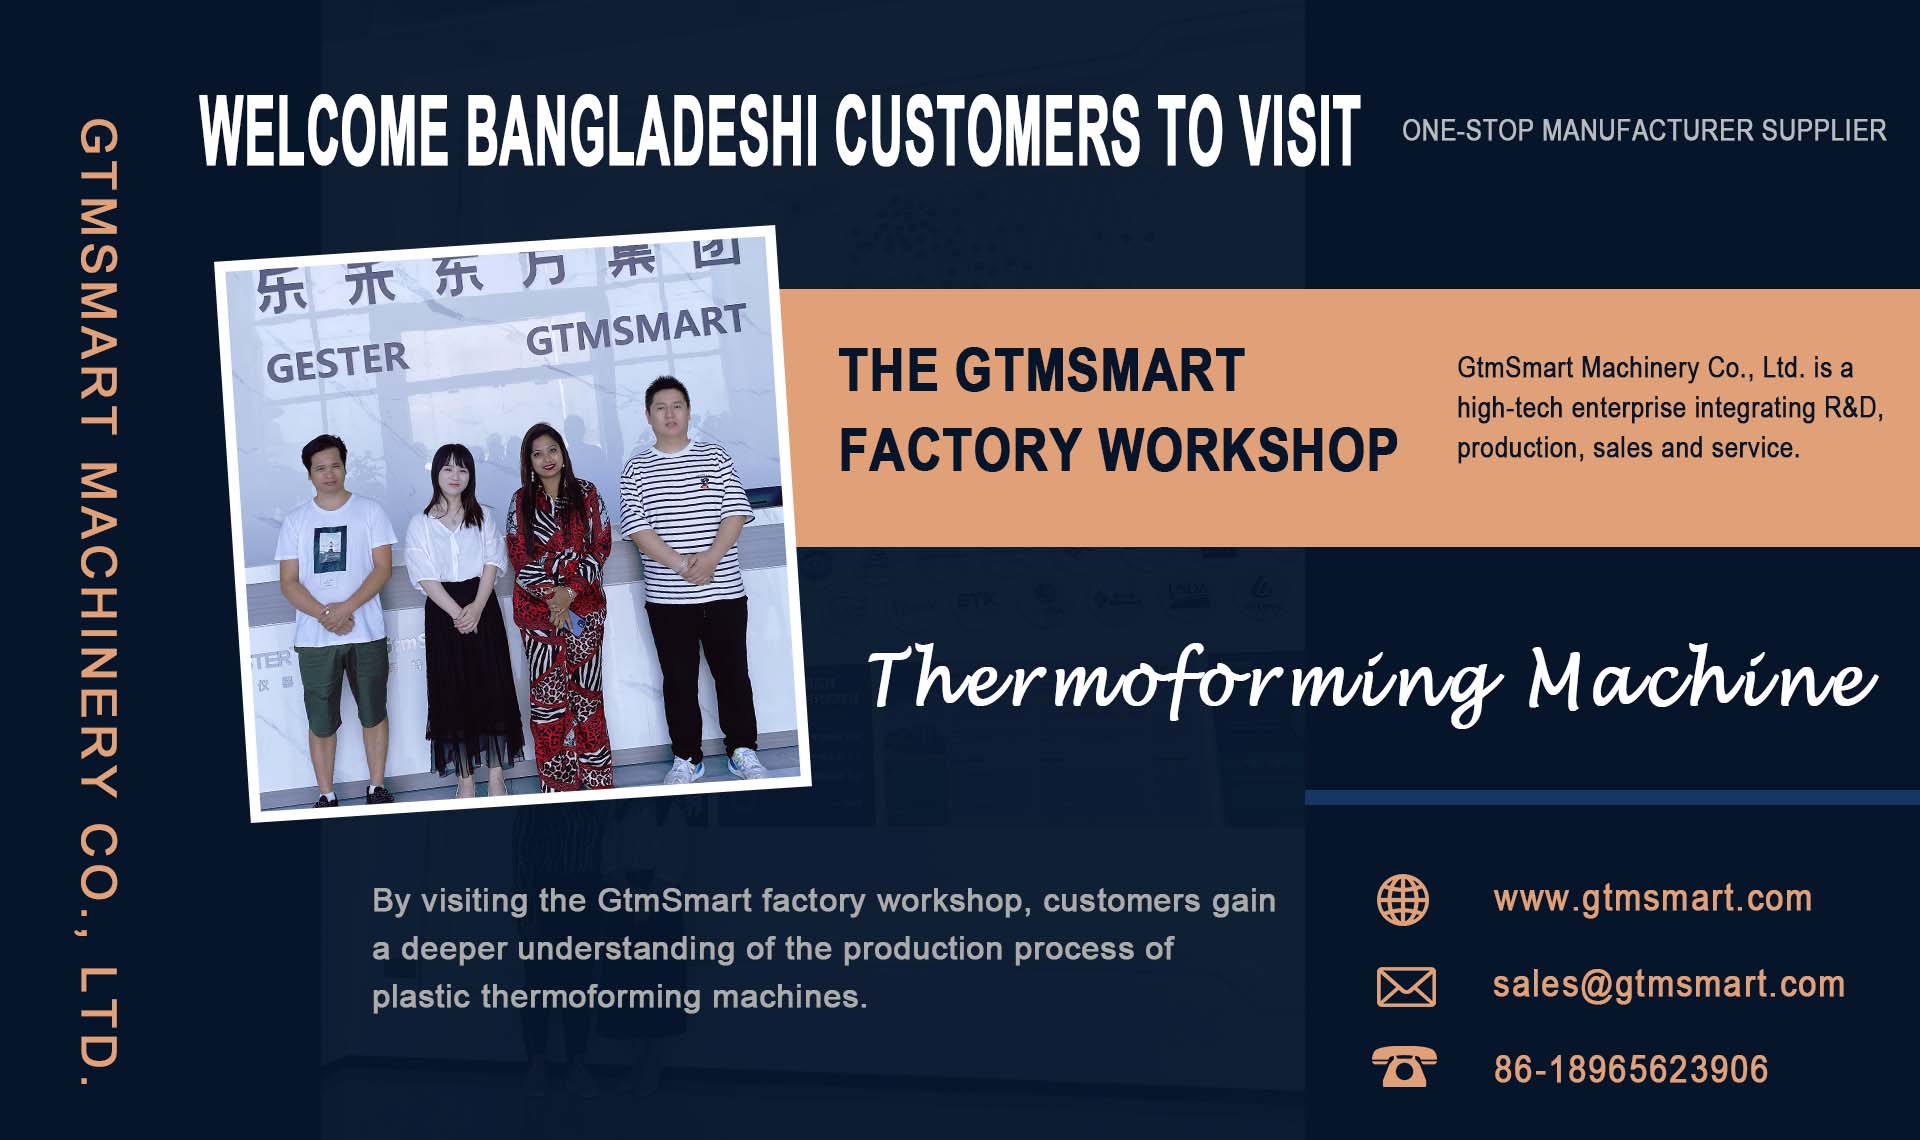 Dobrodošli kupcima iz Bangladeša da posjete radionicu GtmSmart Factory